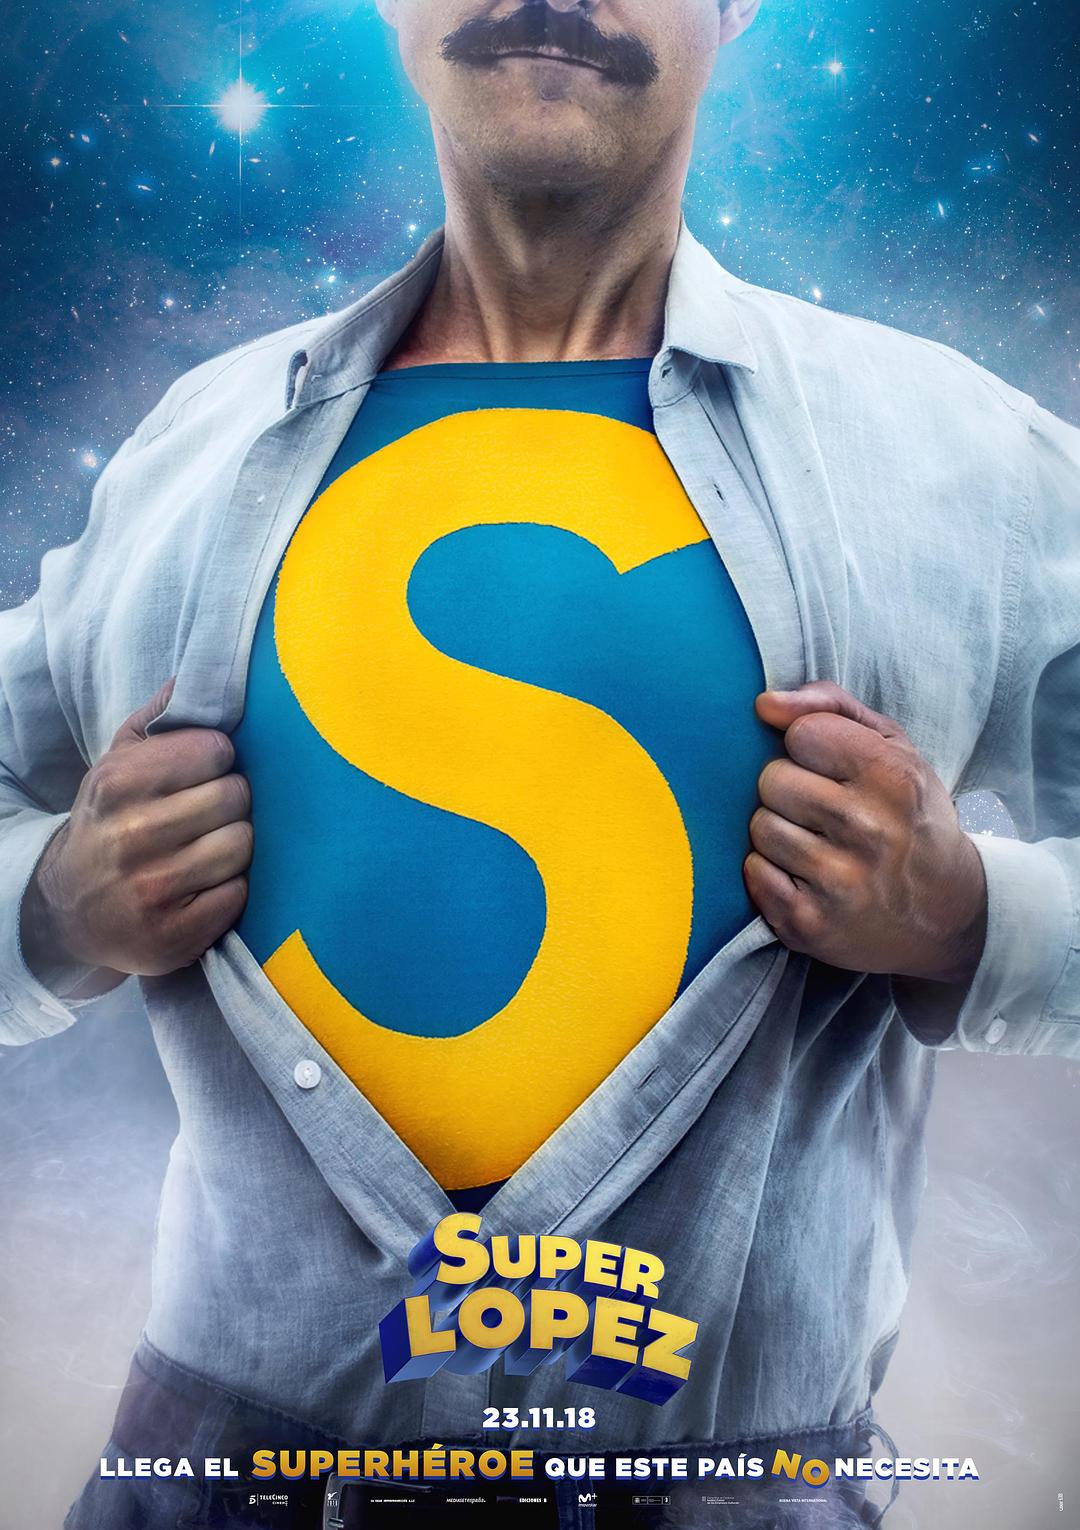 超级洛佩兹/西班牙超人 Superlópez